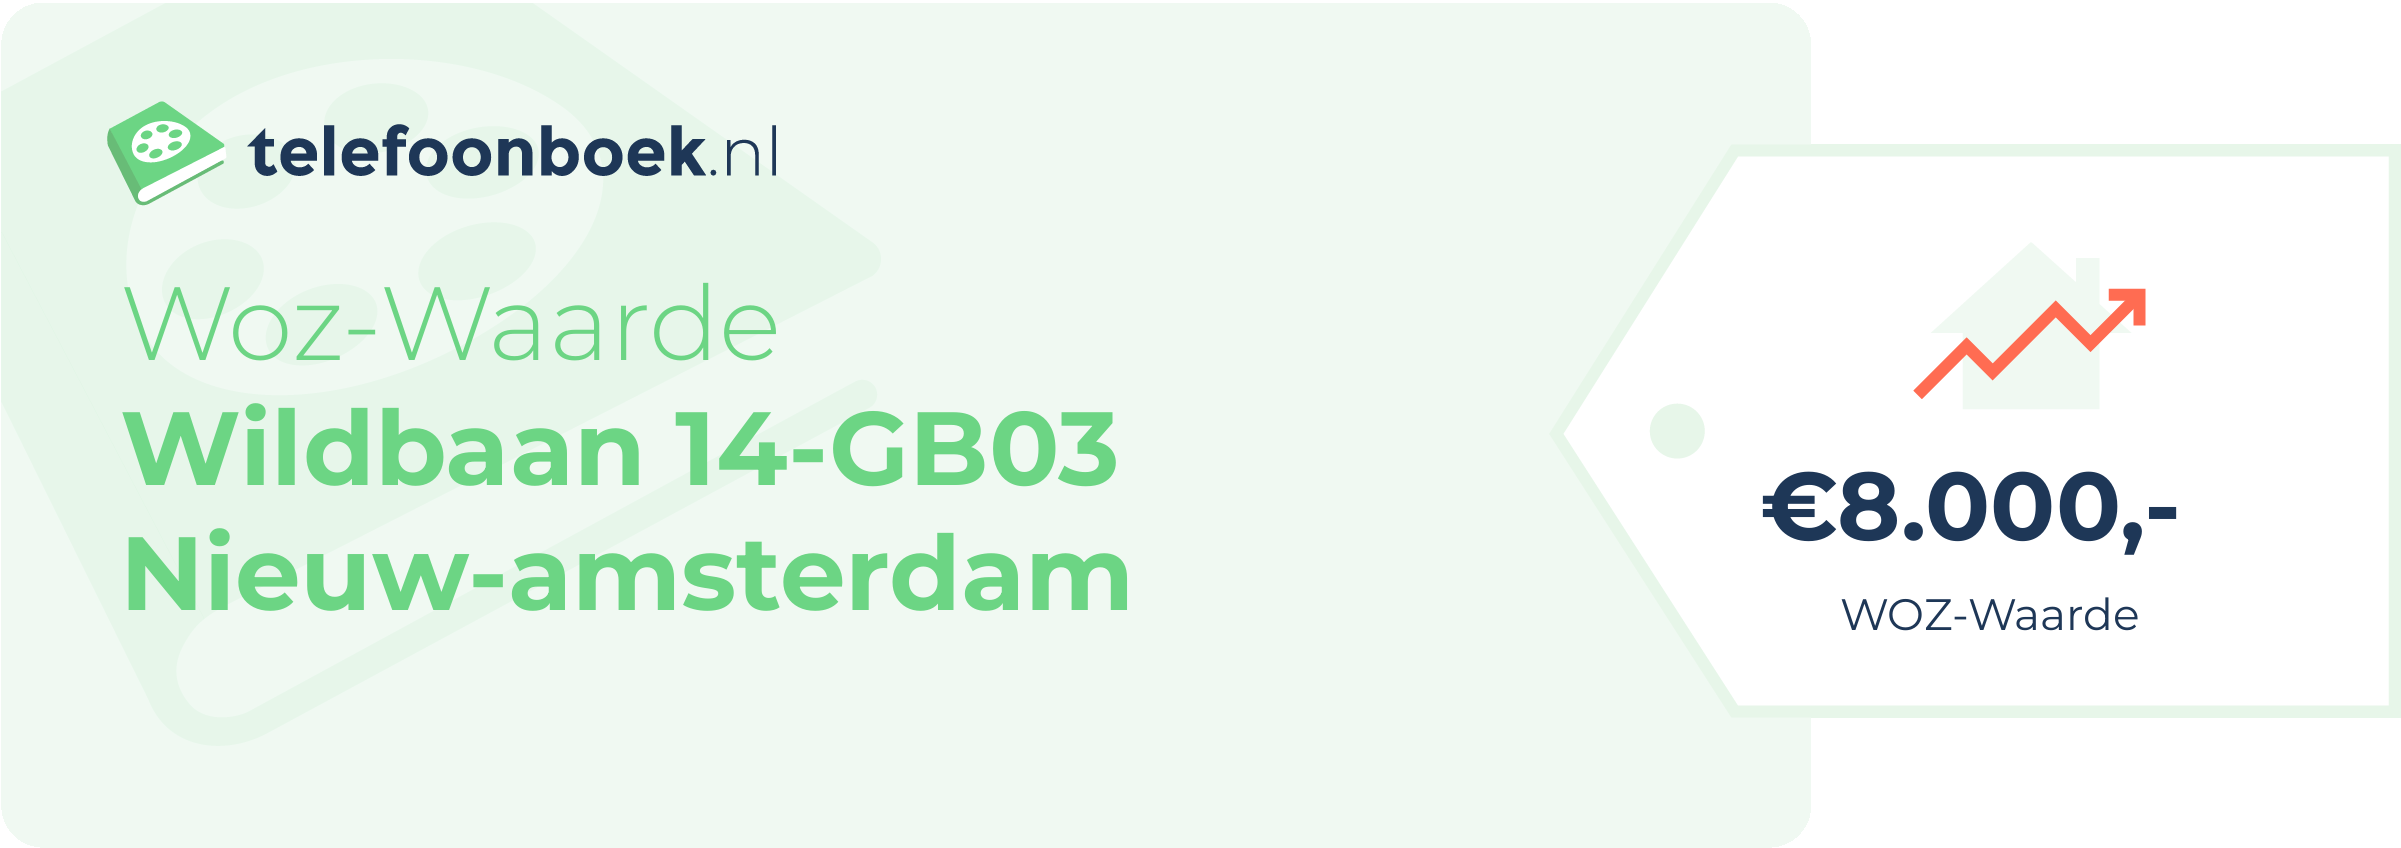 WOZ-waarde Wildbaan 14-GB03 Nieuw-Amsterdam